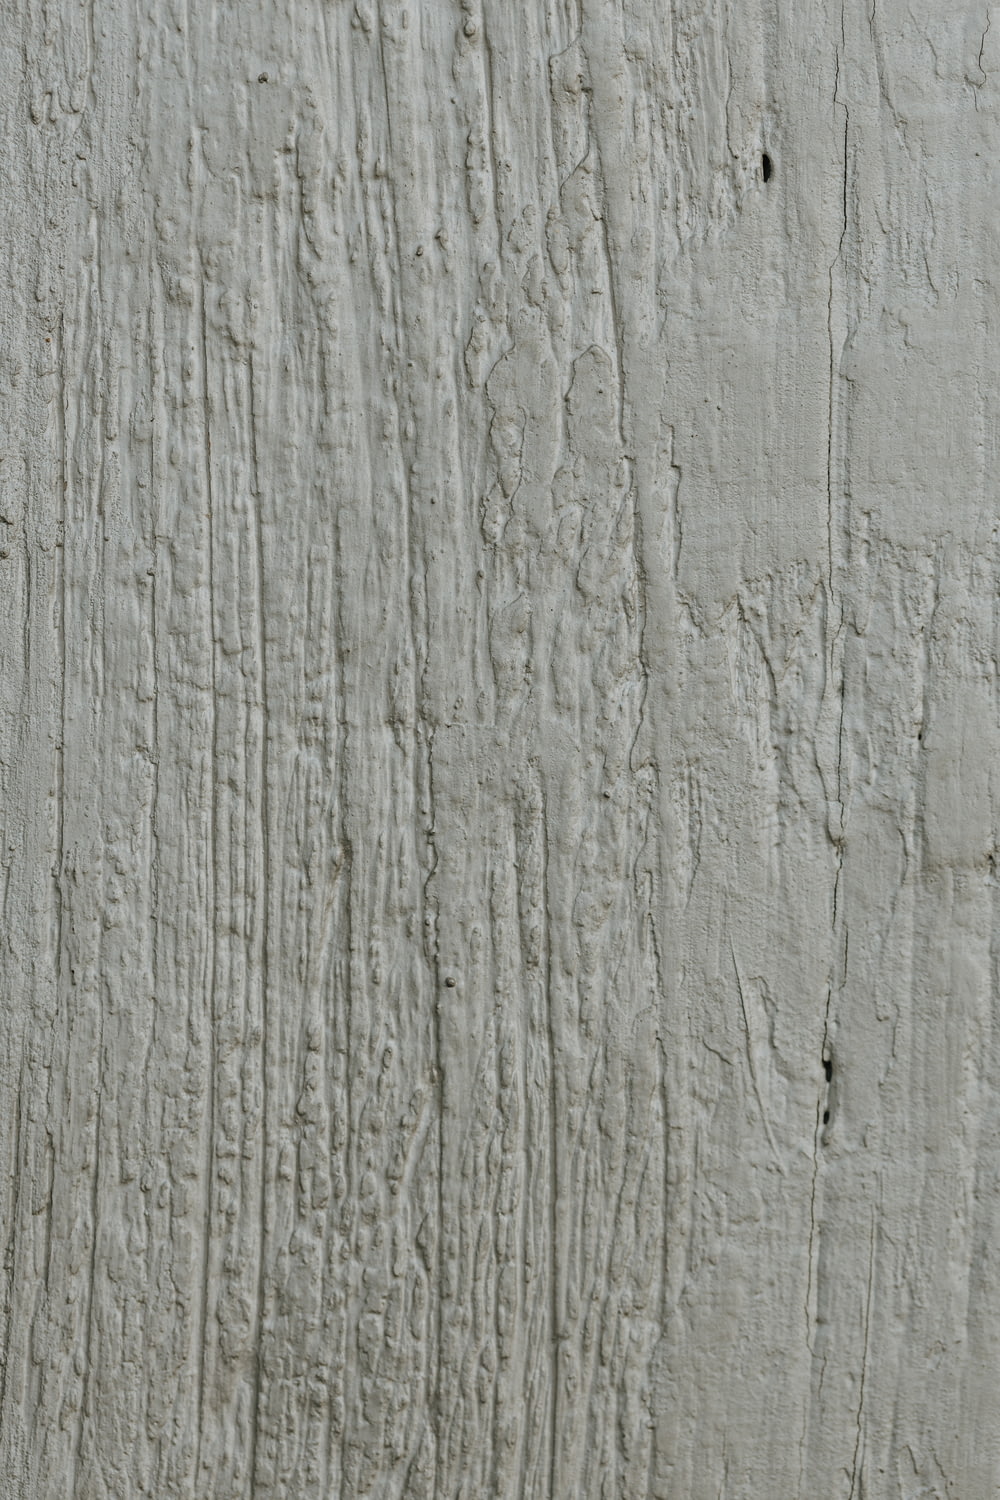 um close up de uma parede branca com tinta descascando